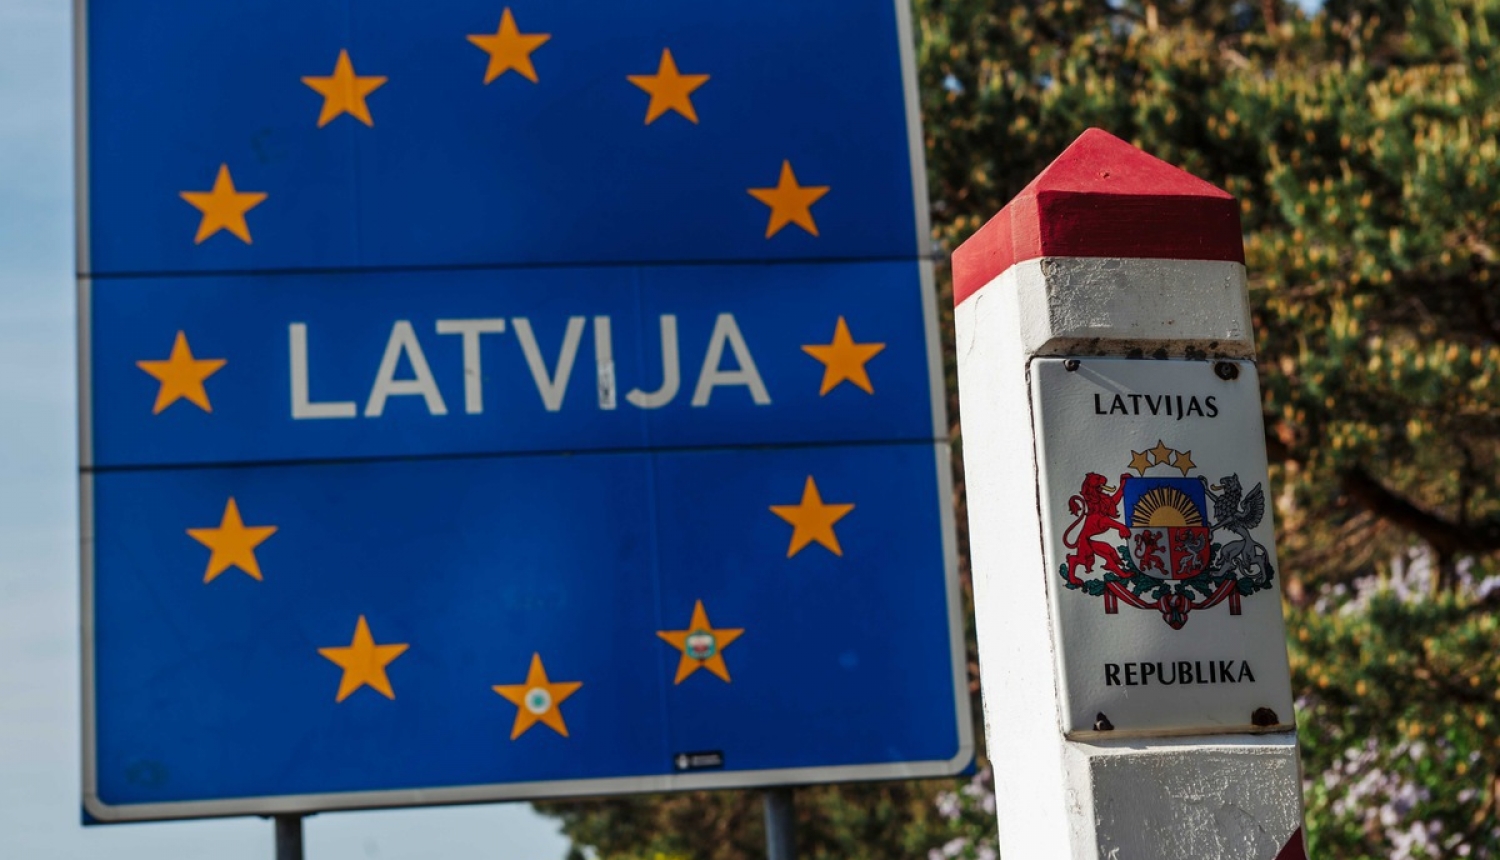 Rasts risinājums Latvijas pierobežā, lai personas varētu doties uz darbu un skolām Lietuvā un Igaunijā, ja tur pieaugs saslimstība